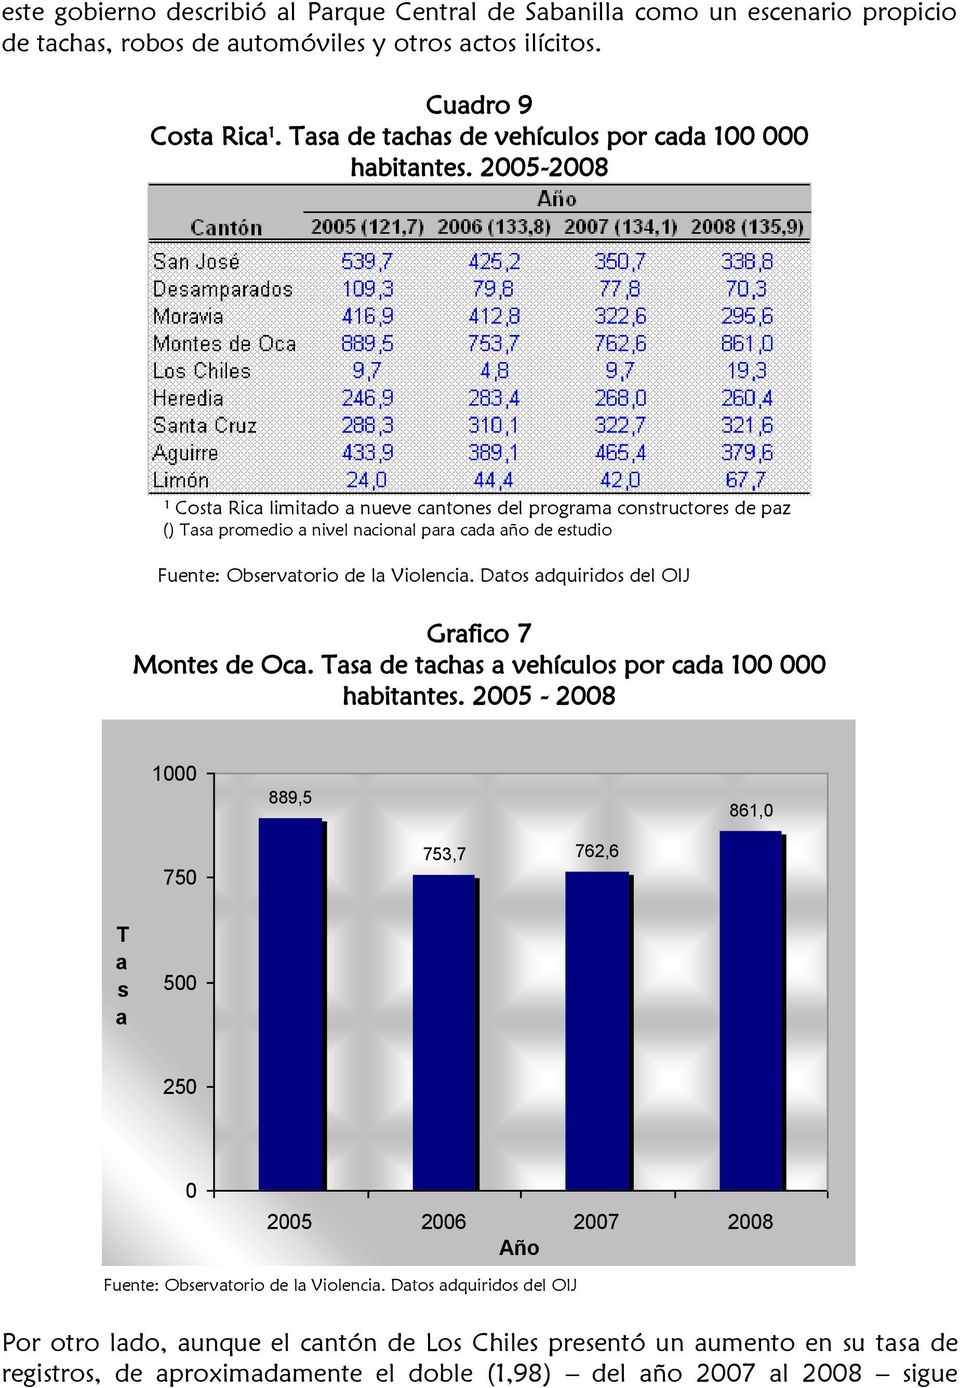 2005-2008 1 Cost Ric limitdo nueve cntones del progrm constructores de pz () Ts promedio nivel ncionl pr cd ño de estudio Fuente: Observtorio de l Violenci.